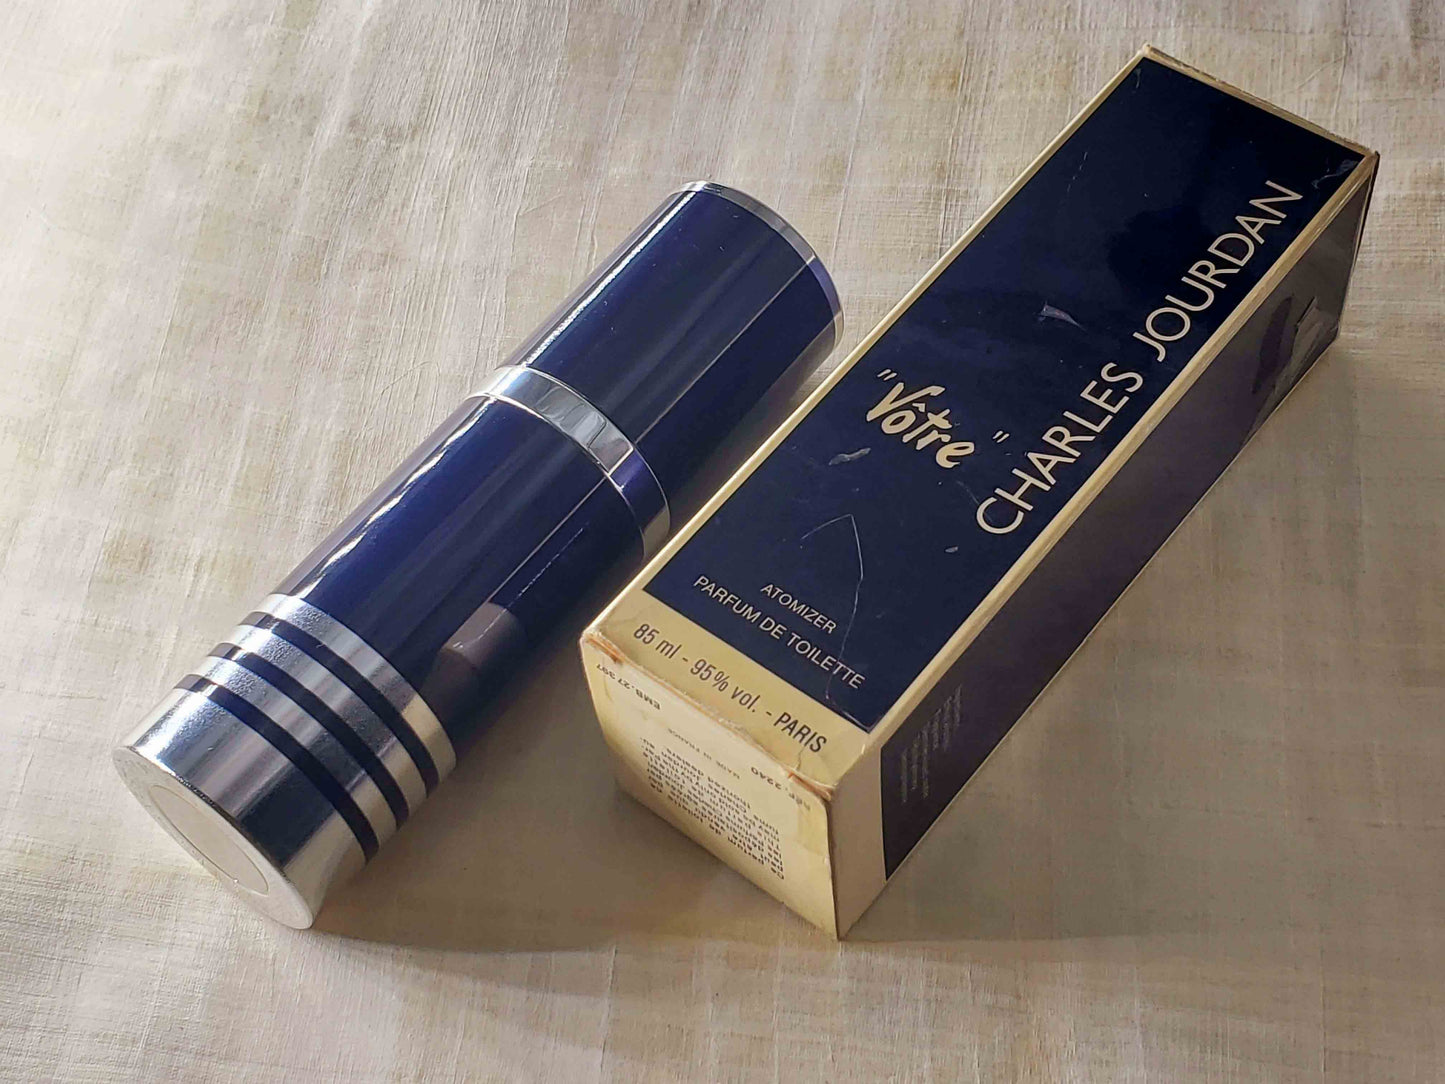 Votre Charles Jourdan (1978) For Women Parfum de Toilette Atomizer 85 ml 2.8 oz, Vintage, Rare